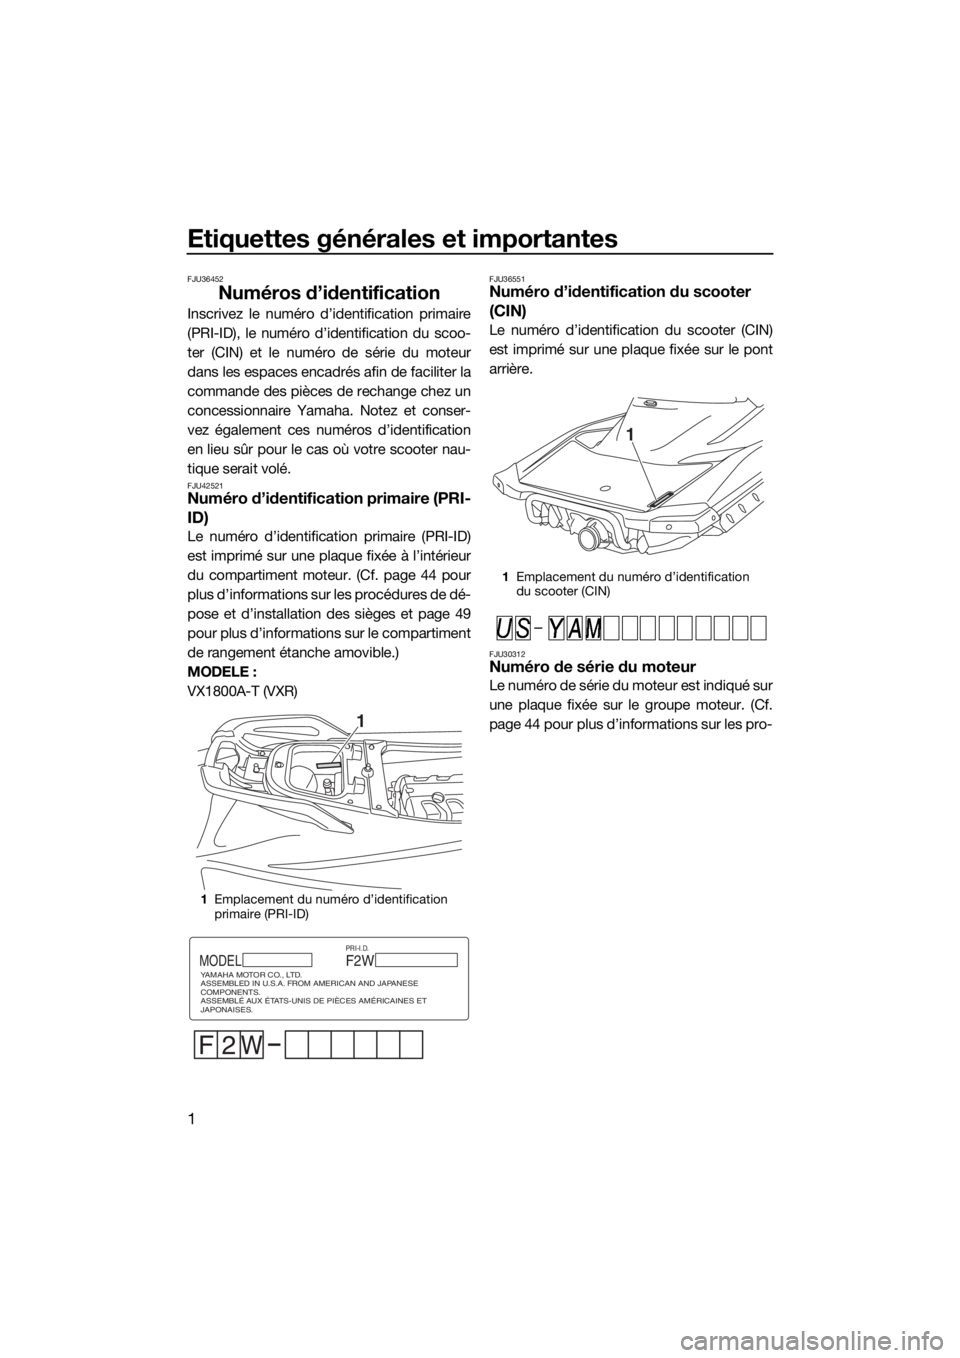 YAMAHA VXR 2018  Notices Demploi (in French) Etiquettes générales et importantes
1
FJU36452
Numéros d’identification
Inscrivez le numéro d’identification primaire
(PRI-ID), le numéro d’identification du scoo-
ter (CIN) et le numéro d